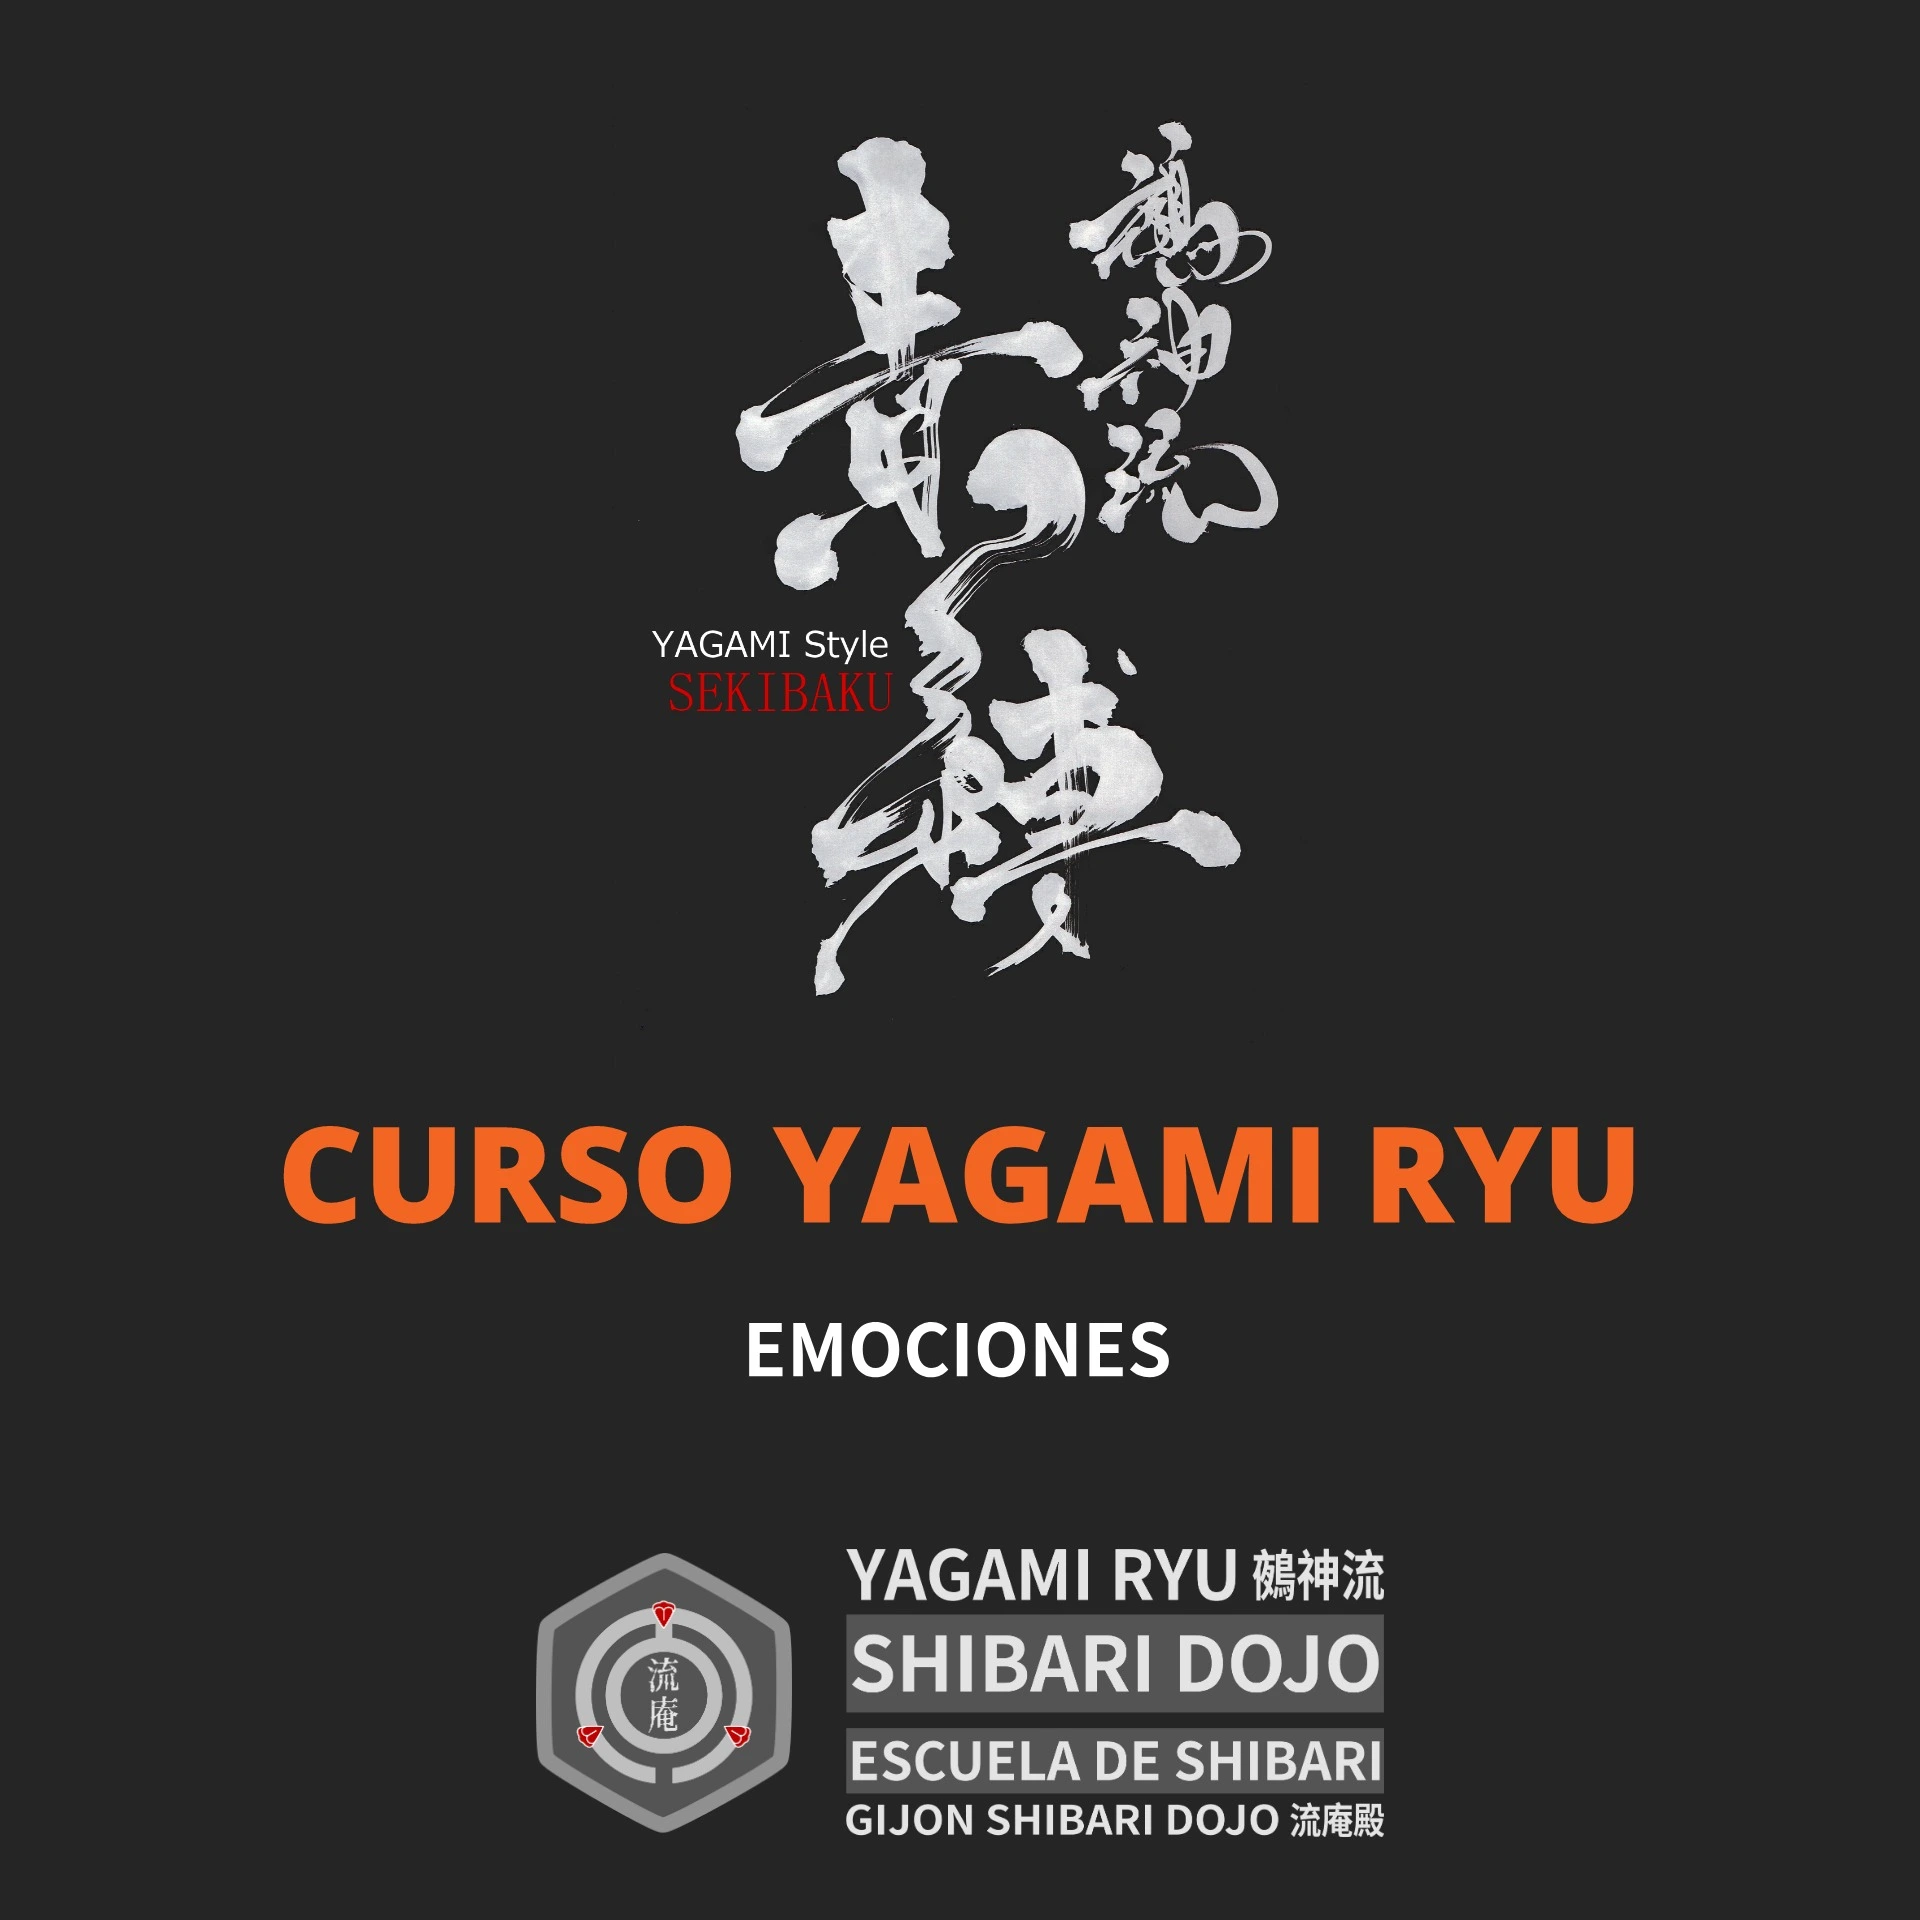 Curso de Shibari Yagami Ryu: Emociones